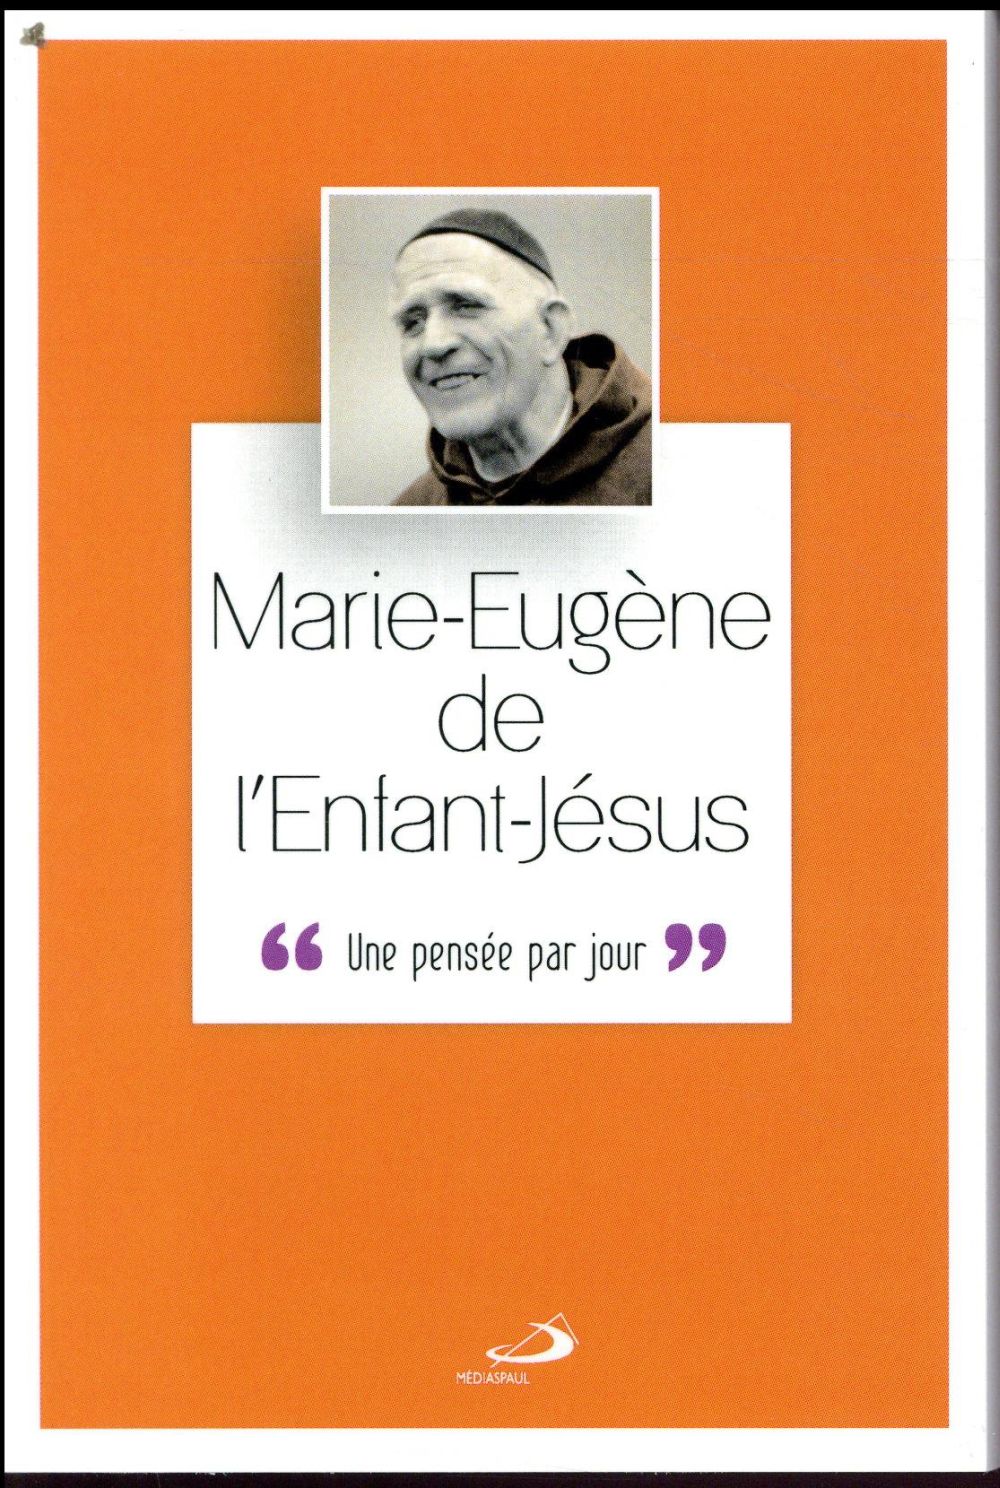 P. MARIE EUGENE DE L'ENFANT JESUS